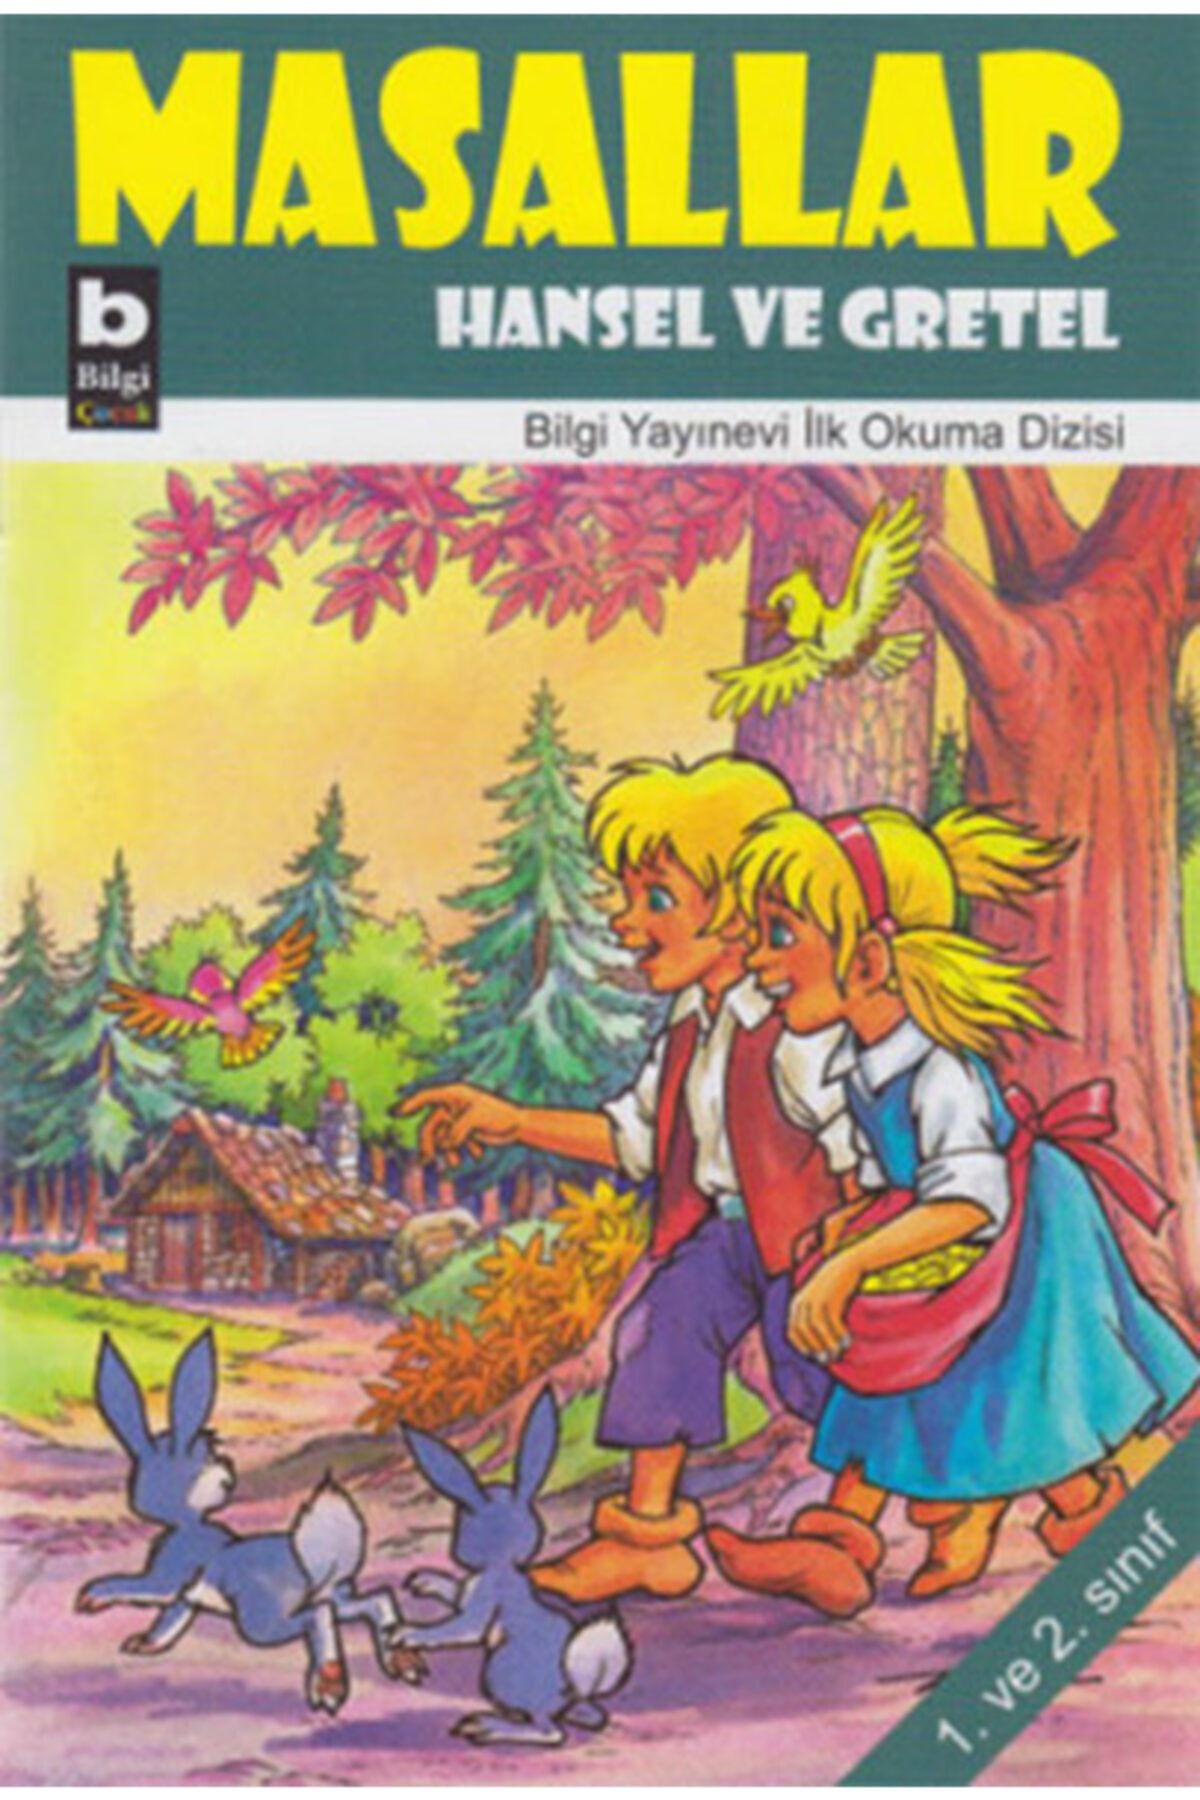 Bilgi Yayınları Bsrl K10 Masallar - Hansel Ve Gretel-kolektif